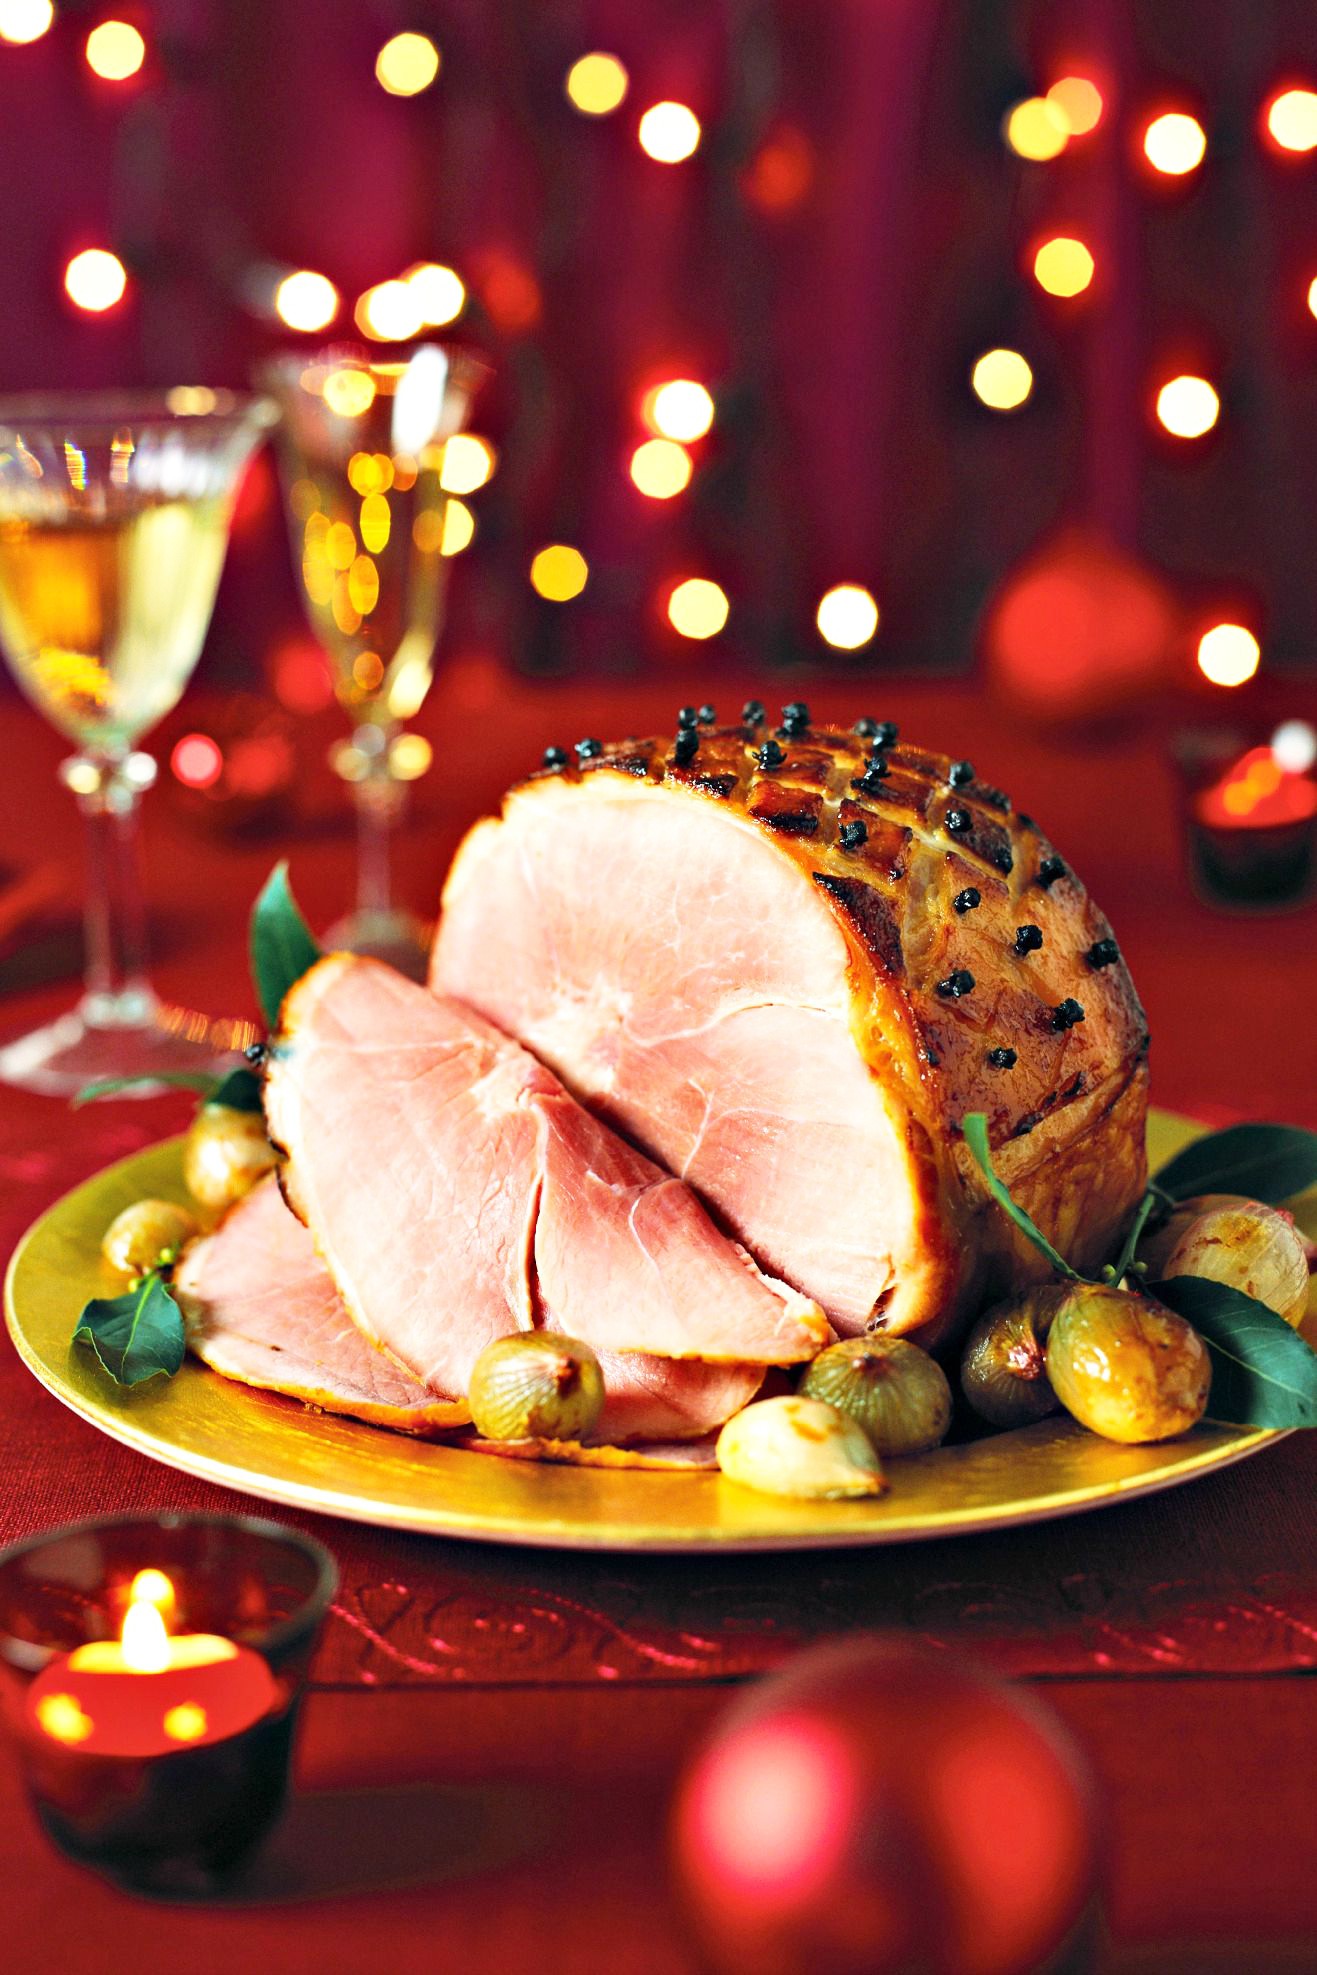 Thực đơn Giáng sinh truyền thống là một phần không thể thiếu trong mùa lễ hội. Với nhiều món ăn đặc trưng như Thịt bò nướng, Hải sản, Bánh tráng mỳ, chúng ta có thể tổ chức bữa tiệc hoành tráng trong mùa lễ hội tuyệt vời này. Hãy xem hình ảnh để tìm thấy những ý tưởng cho thực đơn Giáng sinh của bạn.